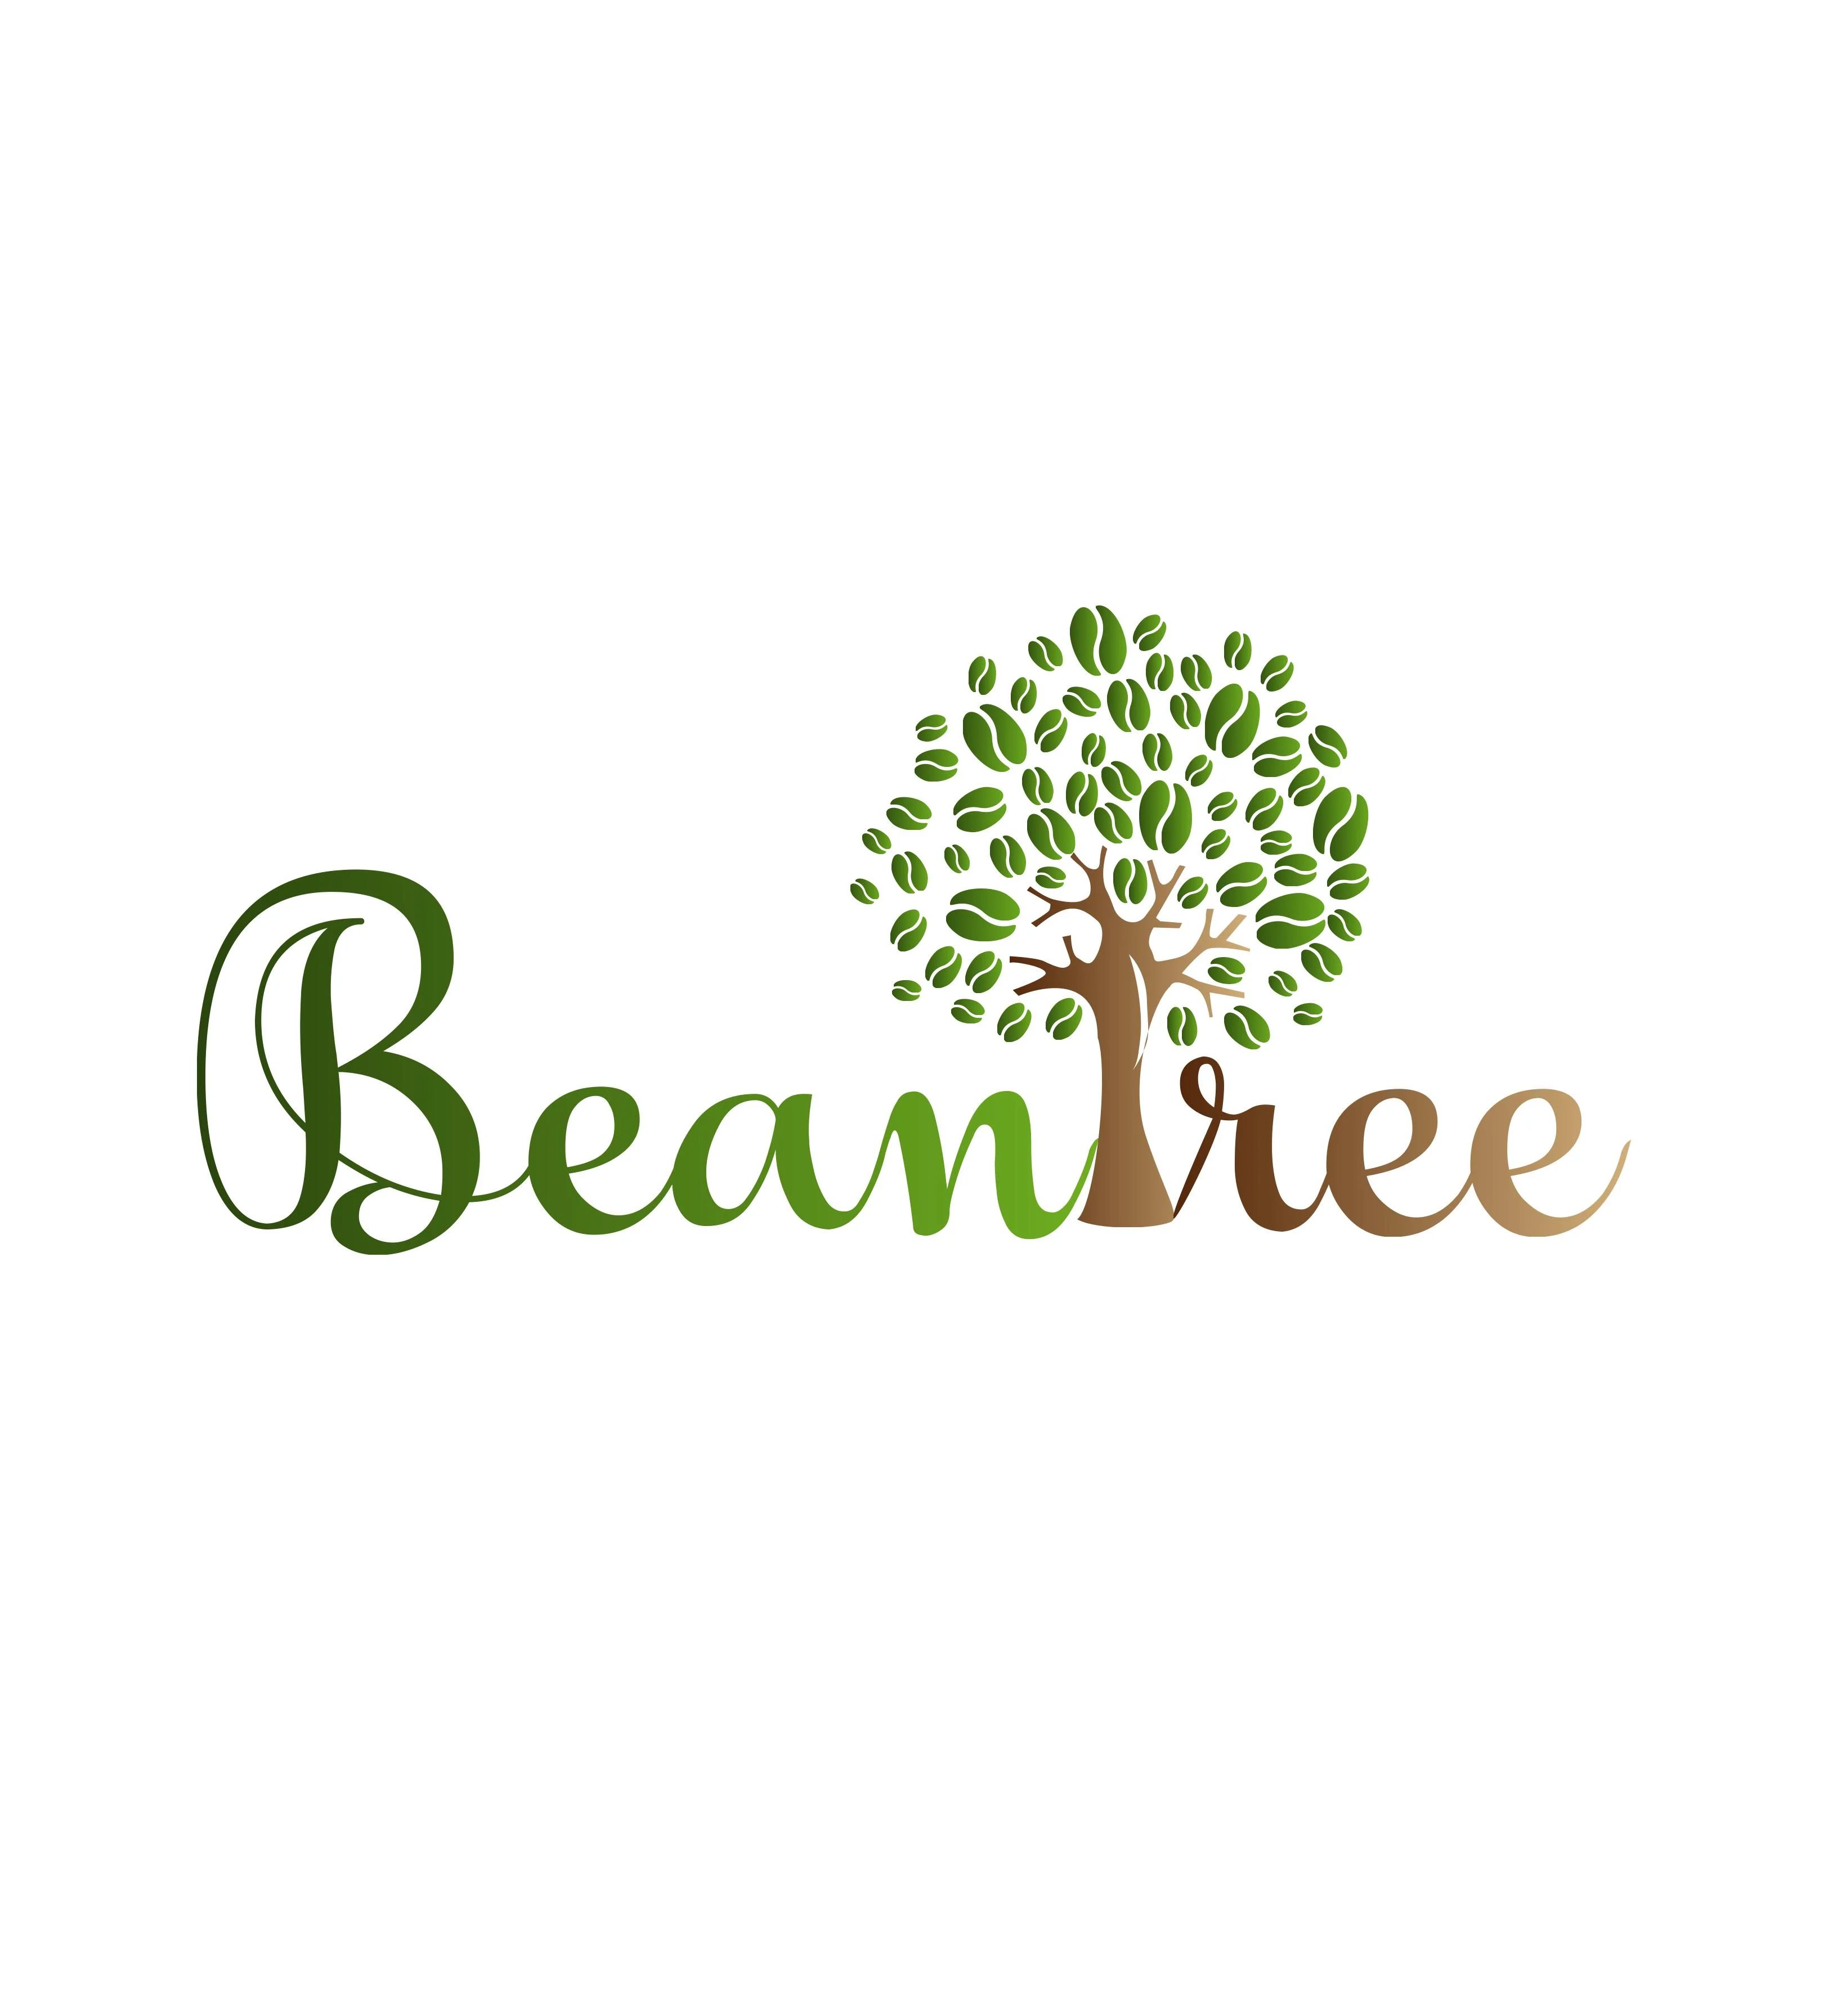 Beantree